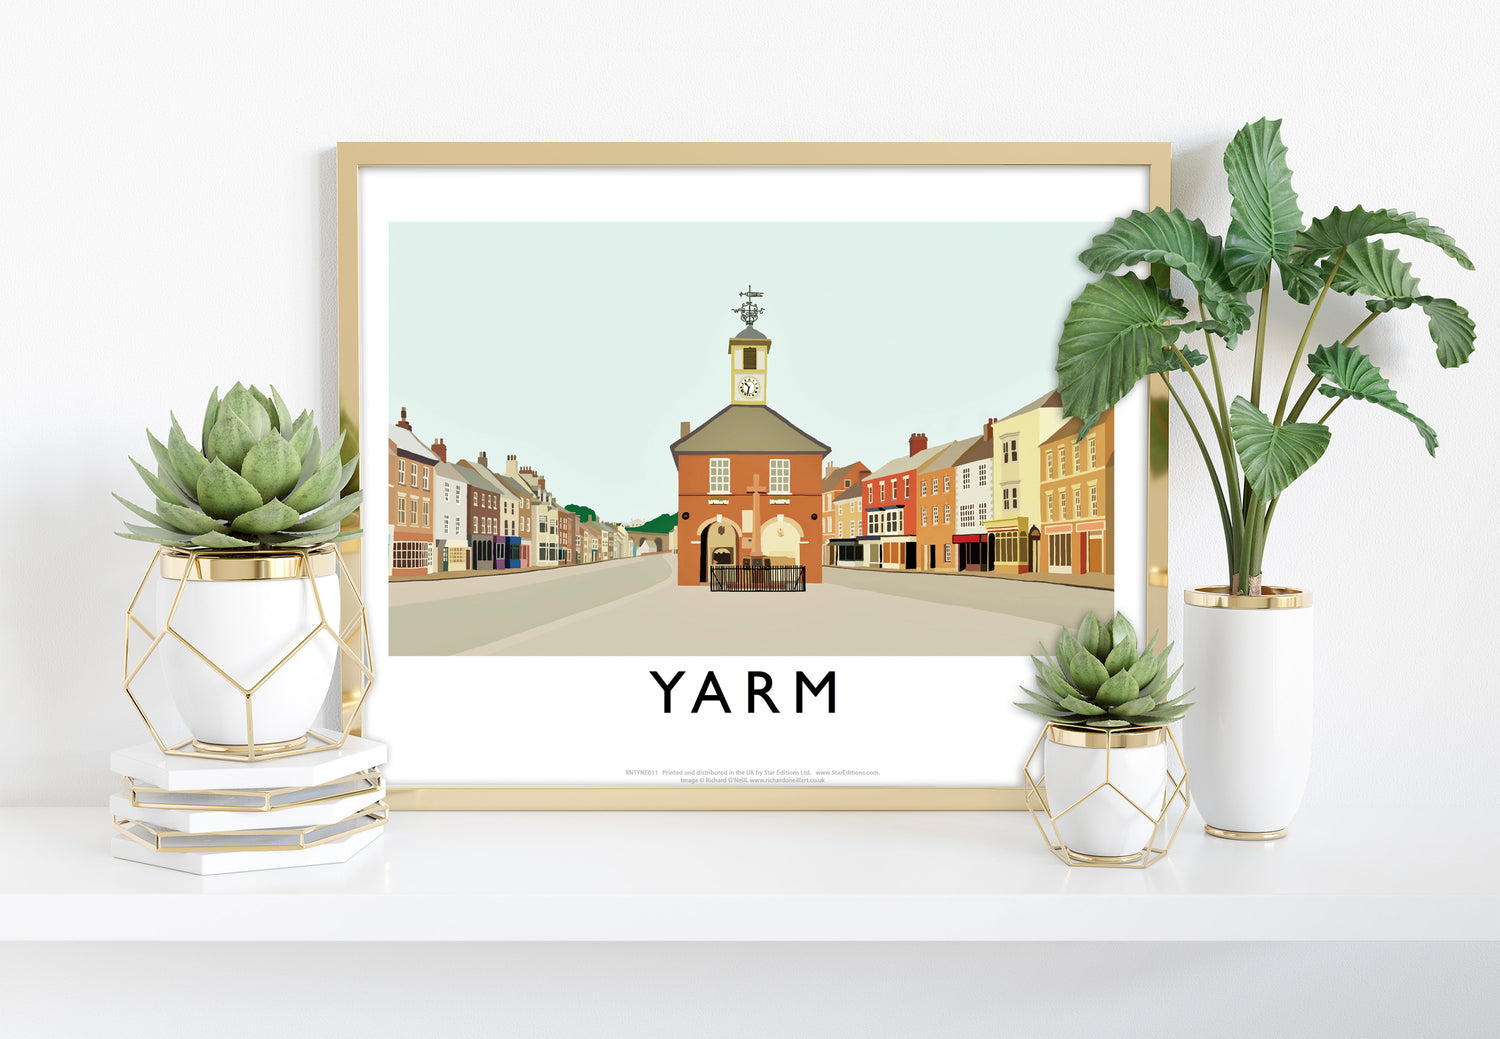 Yarm, North Yorkshire - Art Print